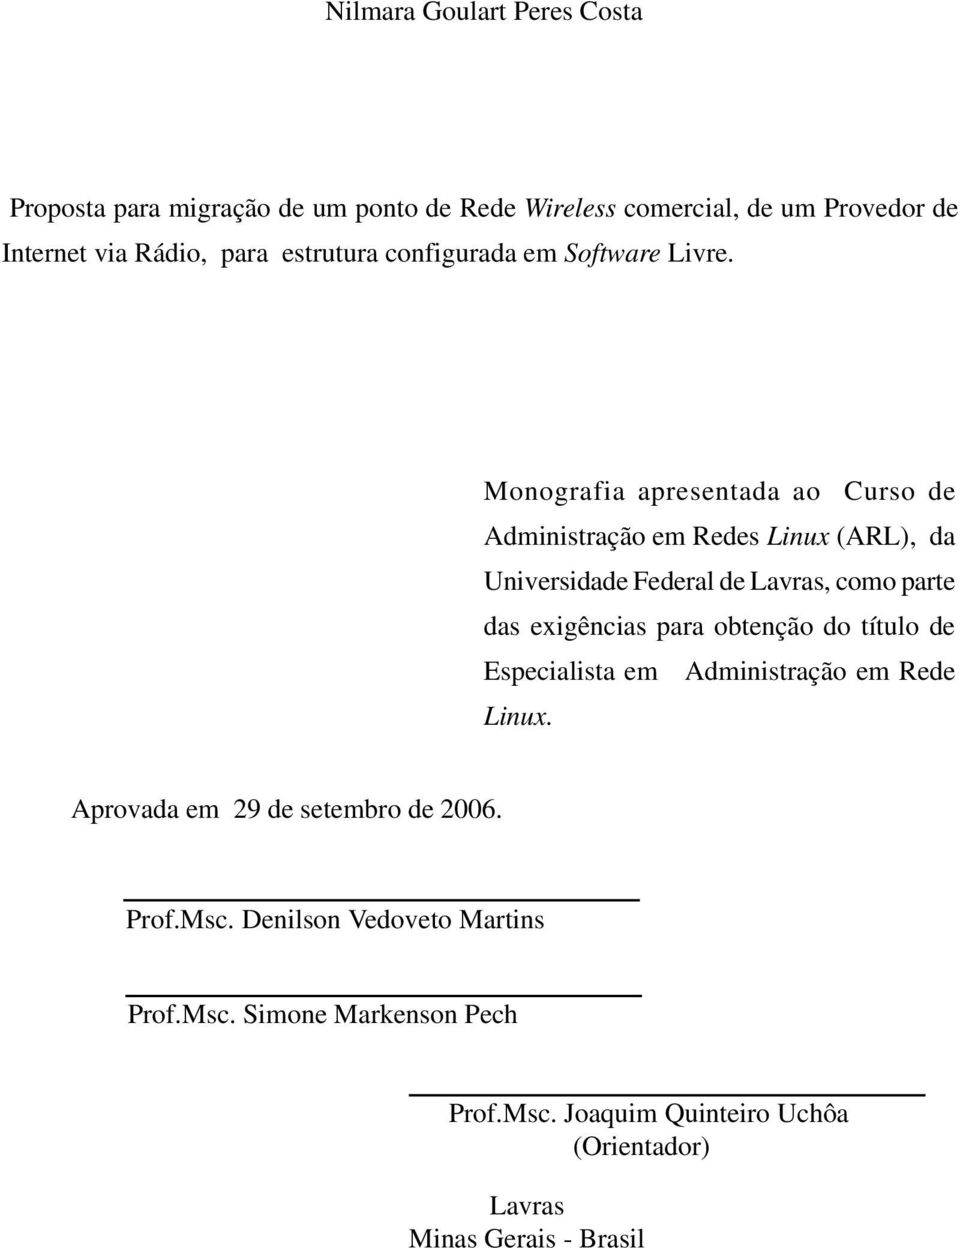 Monografia apresentada ao Curso de Administração em Redes Linux (ARL), da Universidade Federal de Lavras, como parte das exigências para